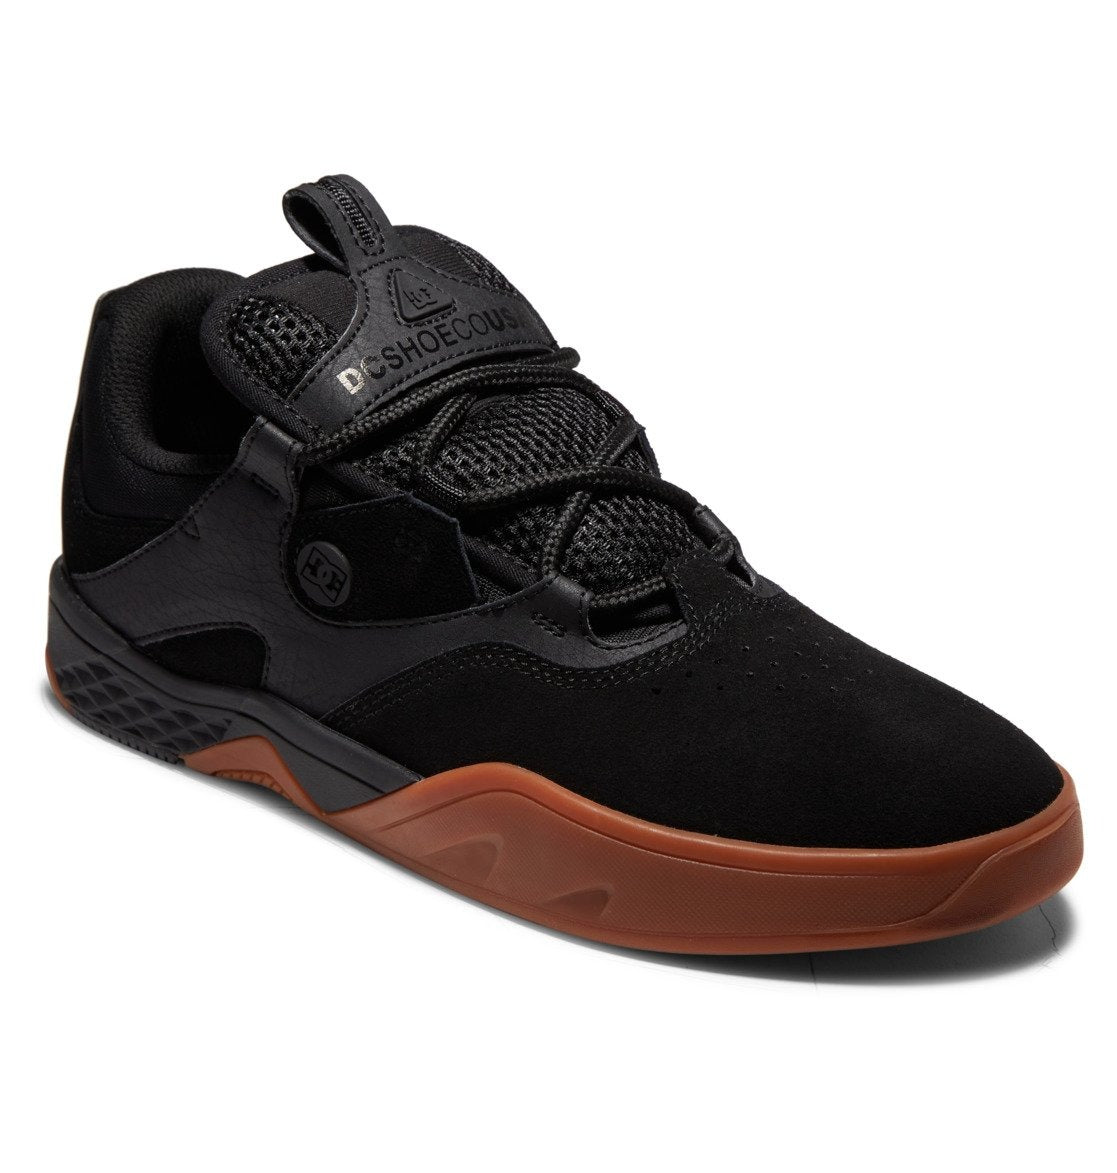 DC SHOES - Kalis (Black/Black/Gum) Skate Shoes